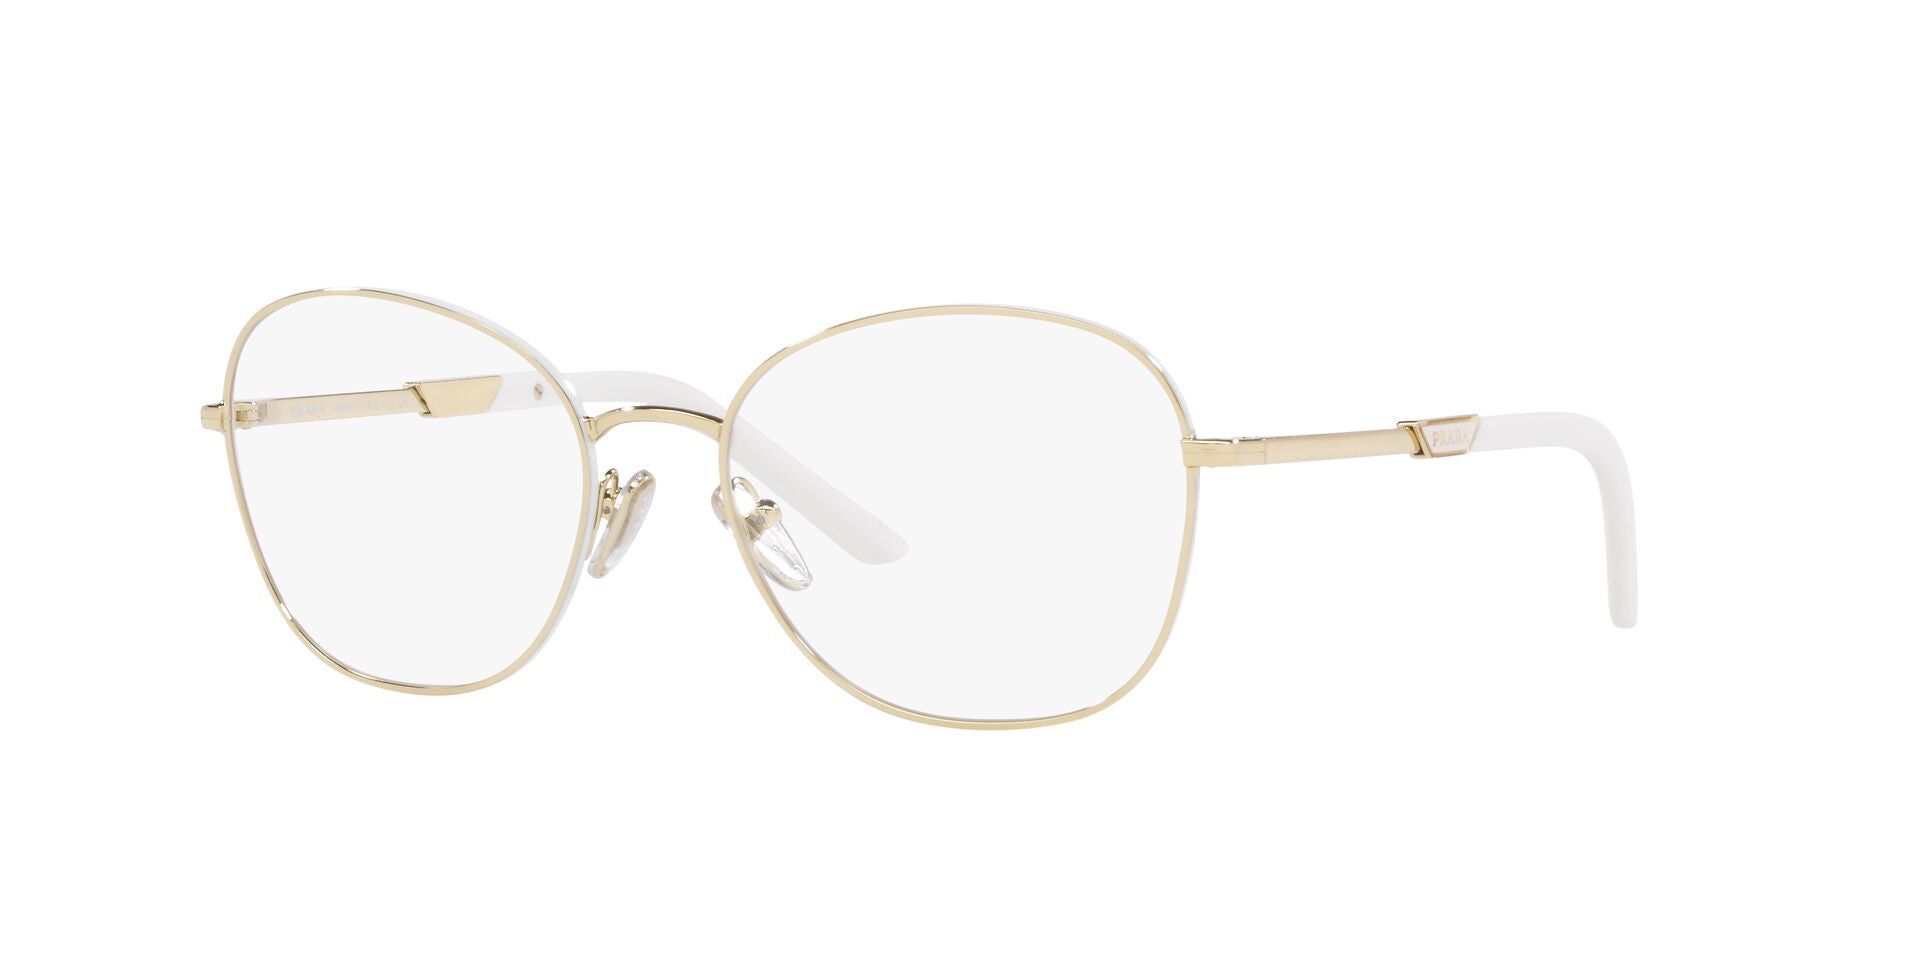 Prada VPR64Y Round Glasses | Fashion Eyewear